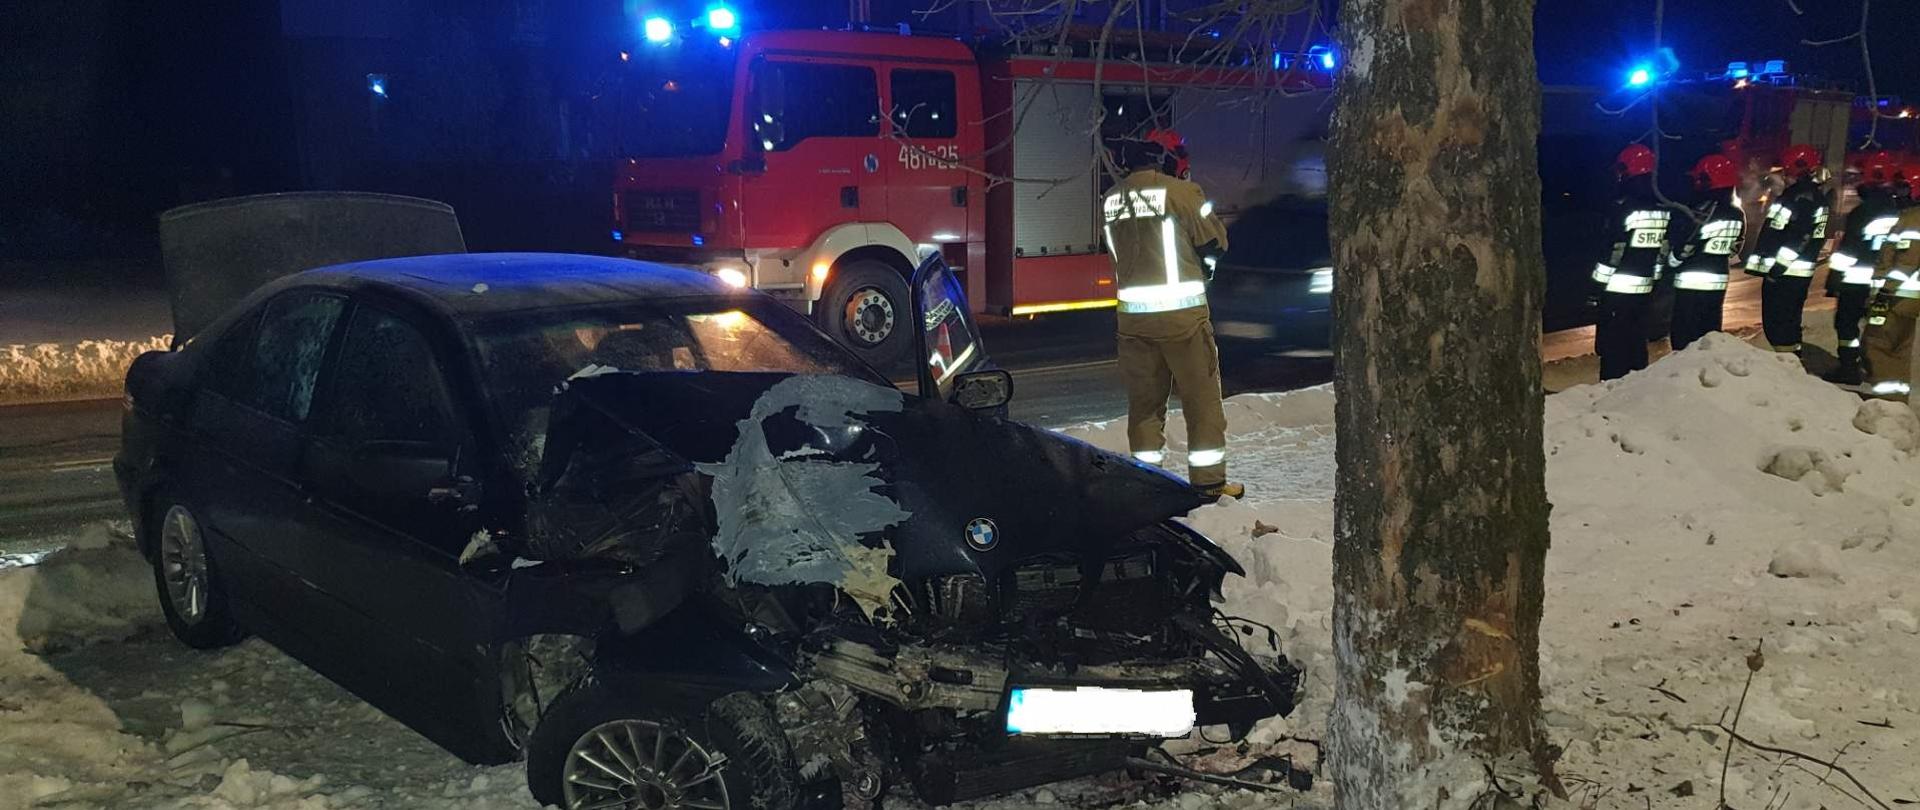 Na zdjęciu widać samochód osobowy BMW oraz drzewo w które uderzył. Samochód posiada uszkodzony przód. W tle widać samochody straży pożarnej z włączona sygnalizacja świetlną, oraz ratowników którzy usuwają skutki zdarzenia. 